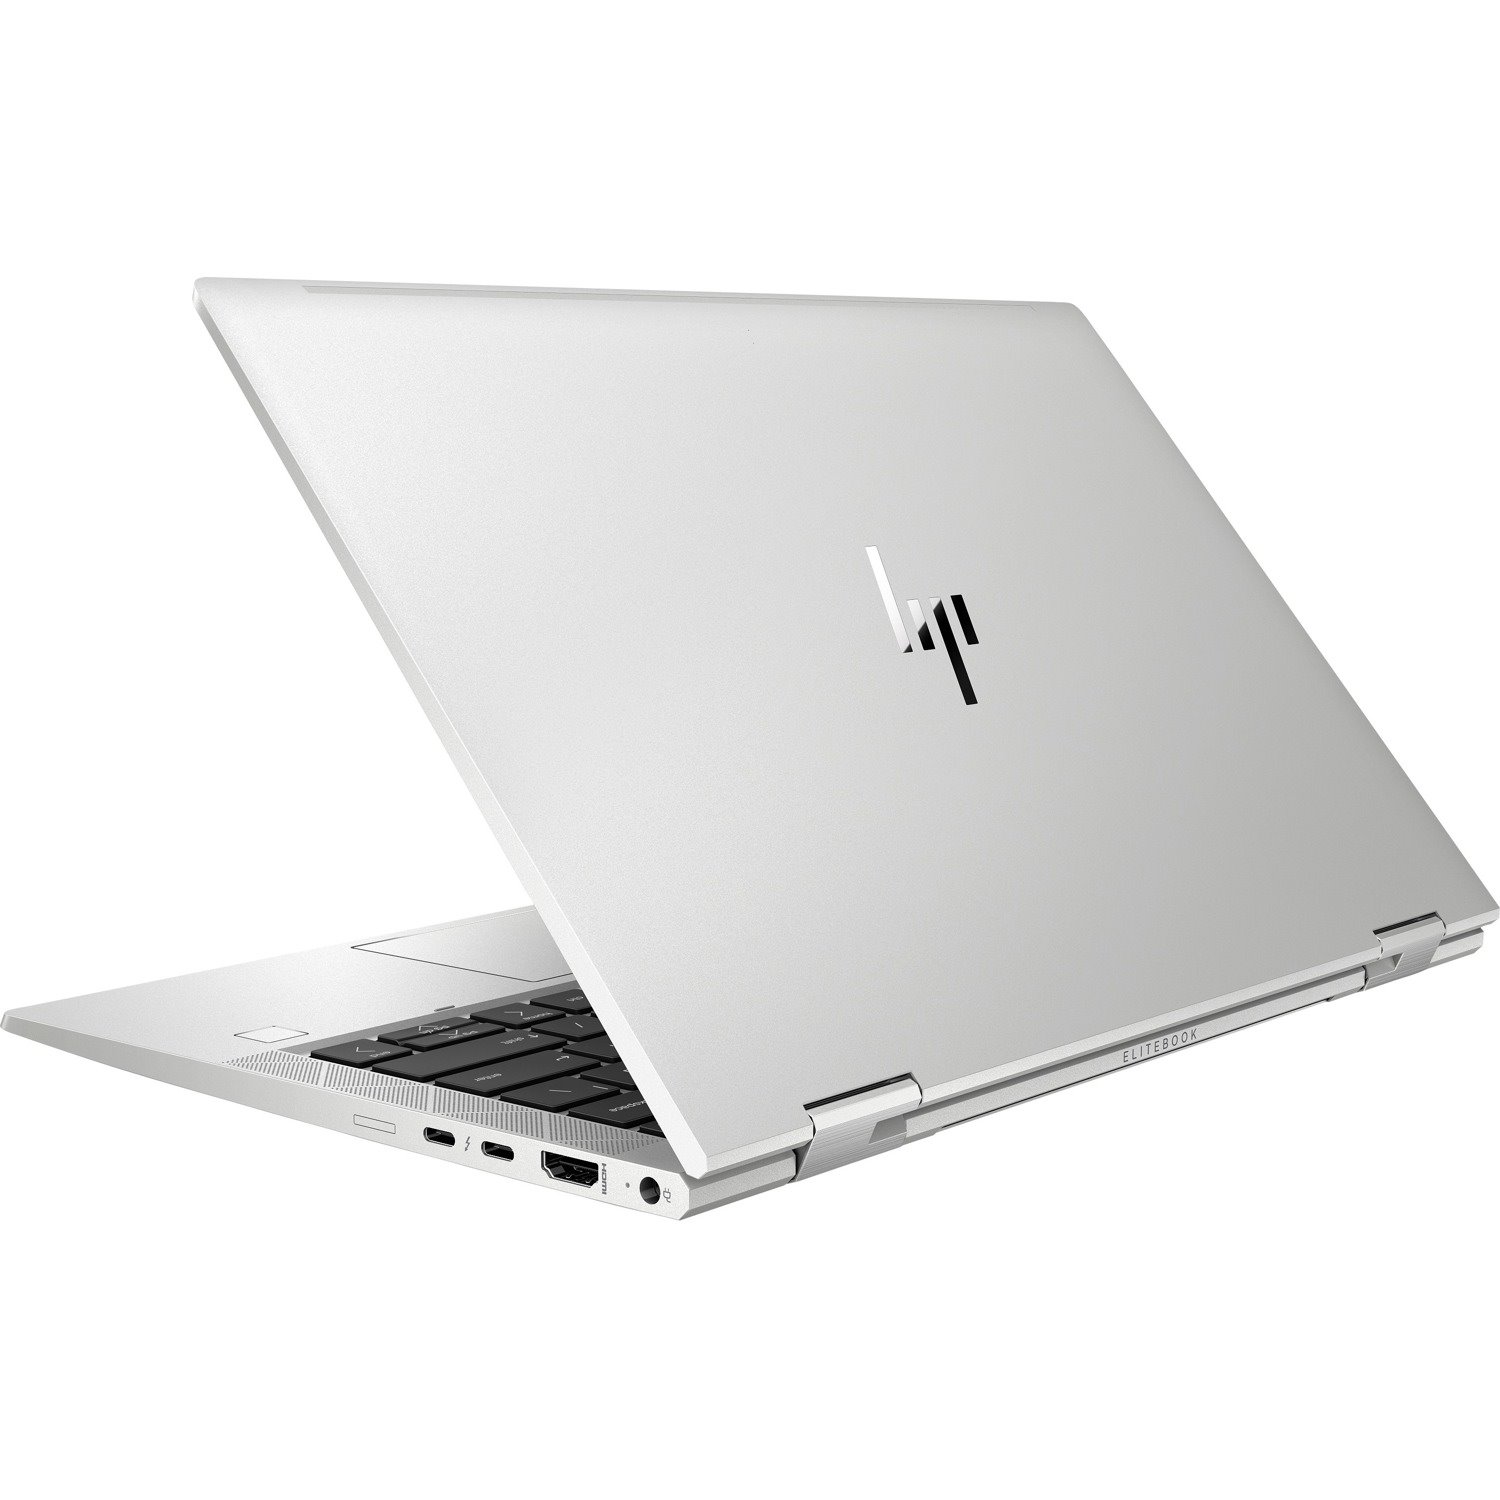 HP EliteBook x360 830 G7 13.3" Touchscreen Convertible 2 in 1 Notebook - Full HD - 1920 x 1080 - Intel Core i7 10th Gen i7-10610U Quad-core (4 Core) 1.80 GHz - 16 GB Total RAM - 256 GB SSD